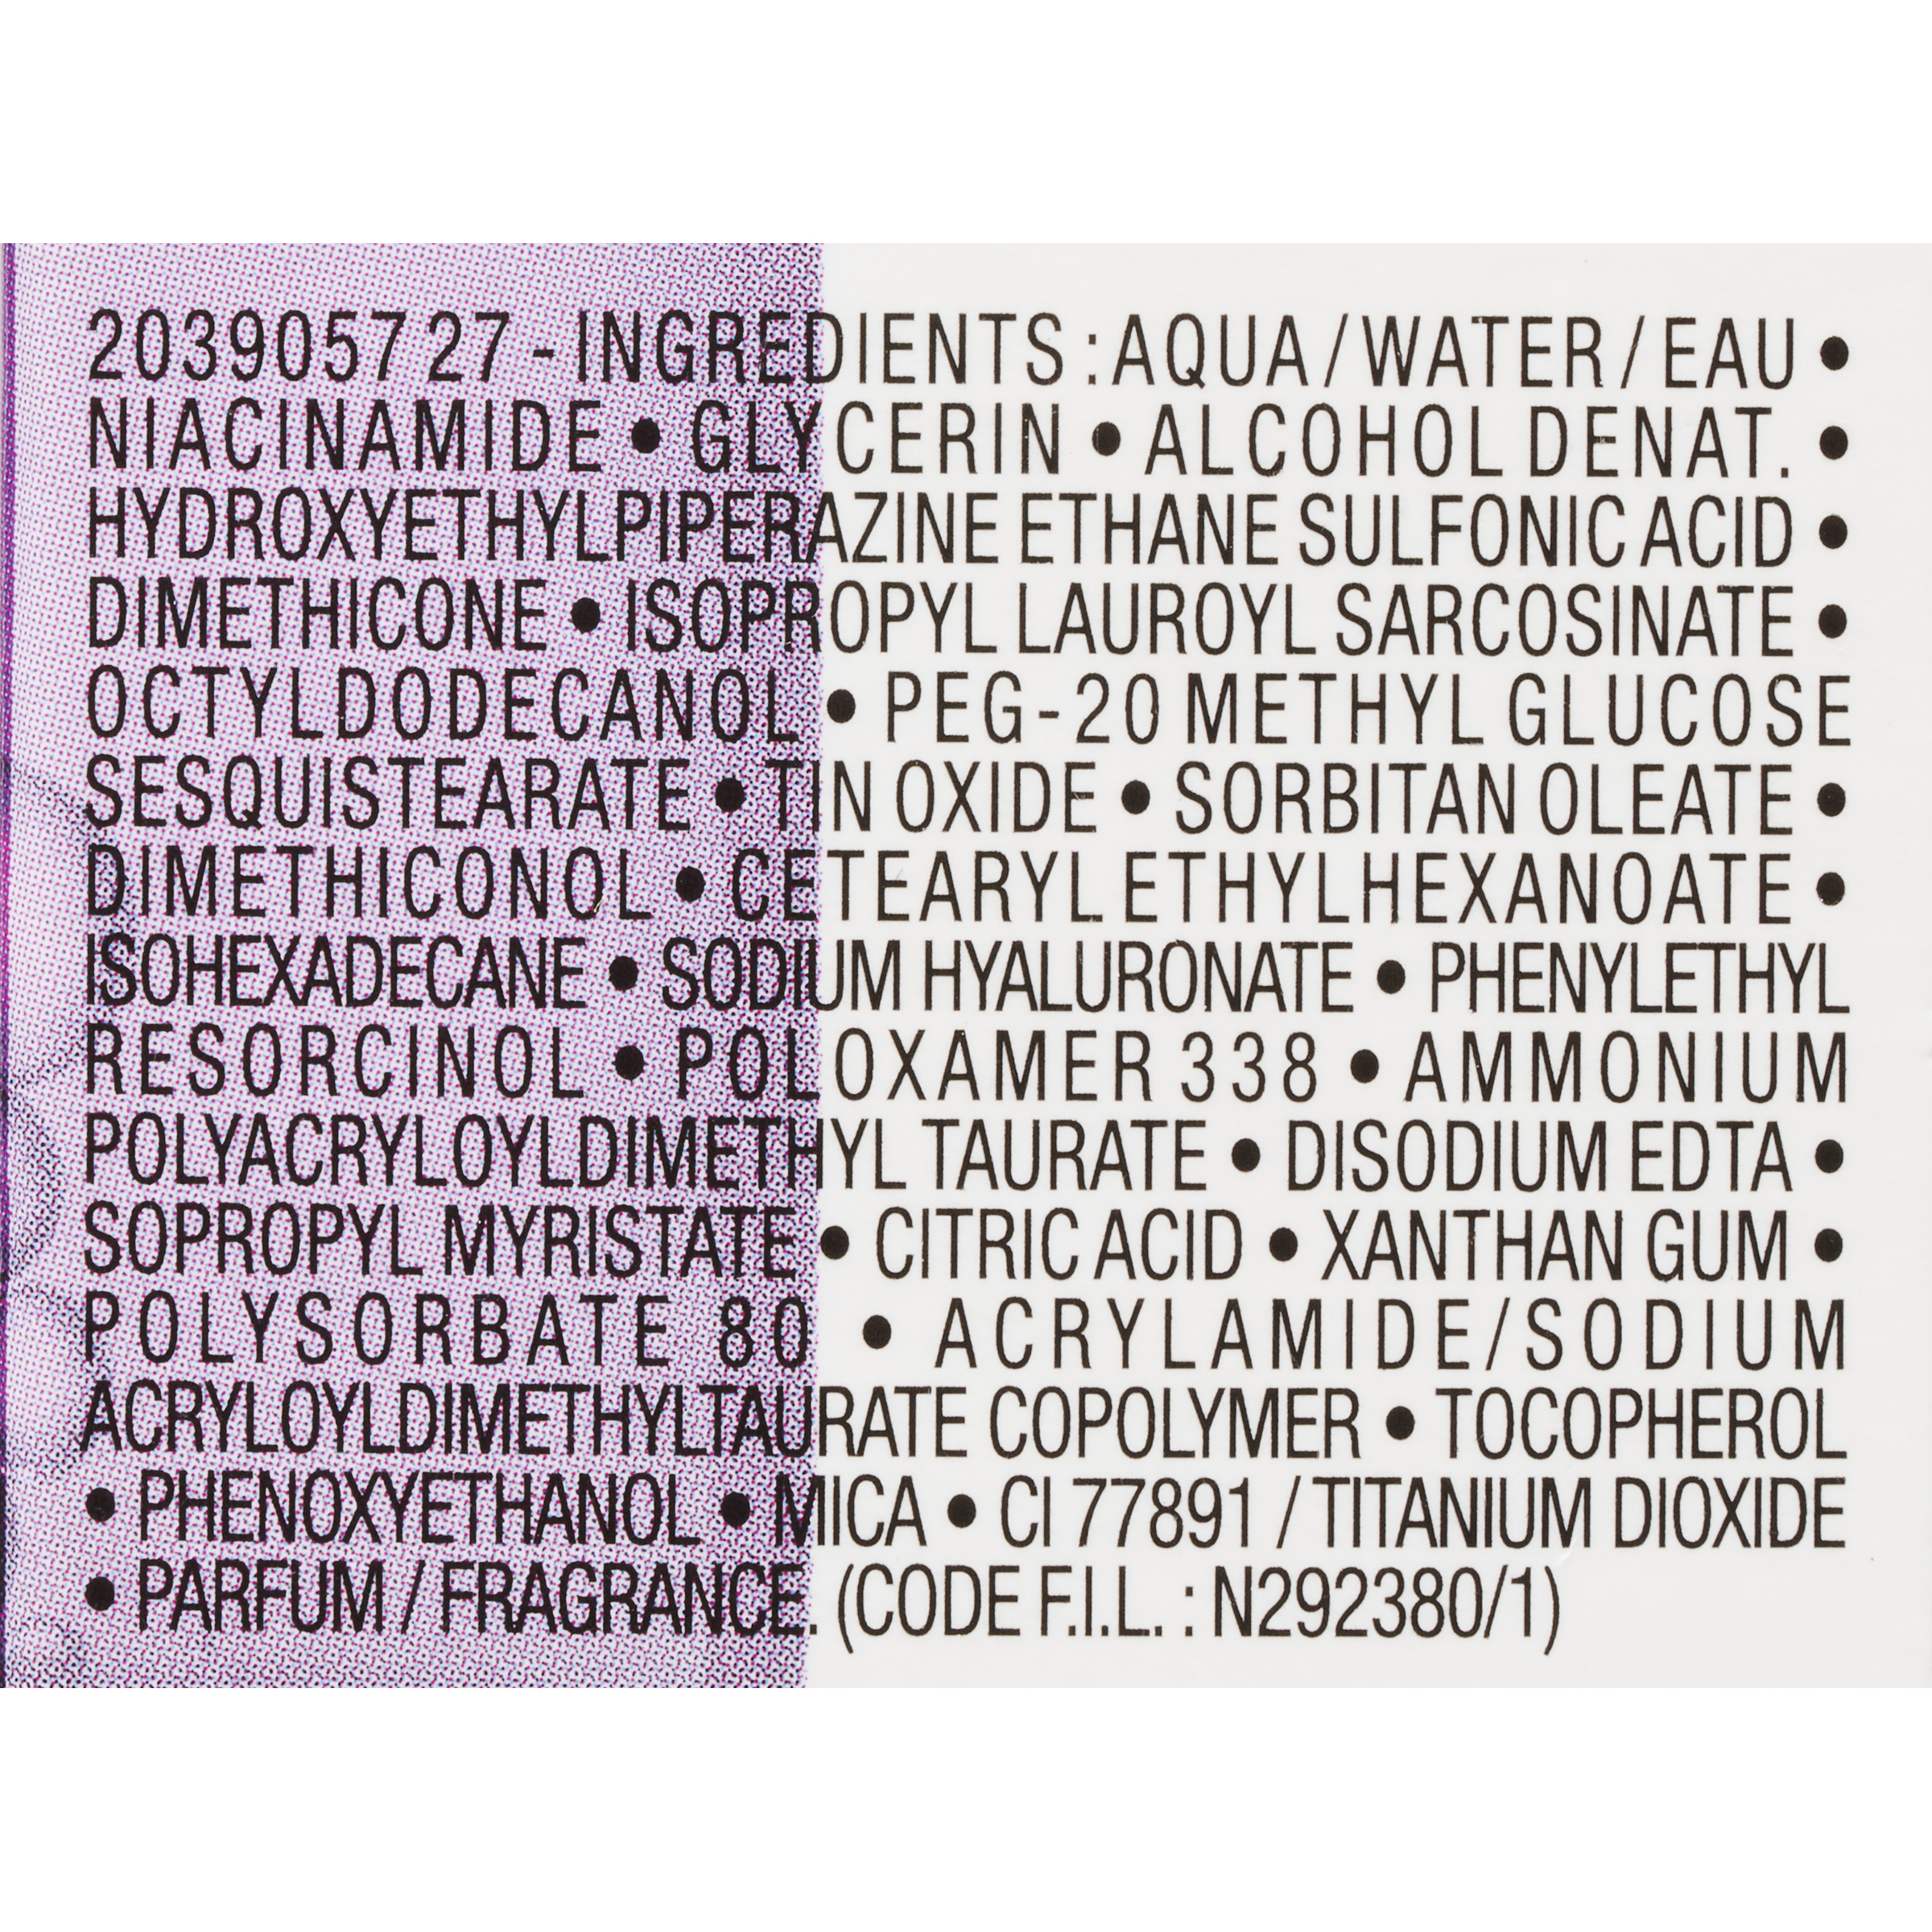 La Roche-Posay Pure Niacinamide 10 - Liste des ingrédients